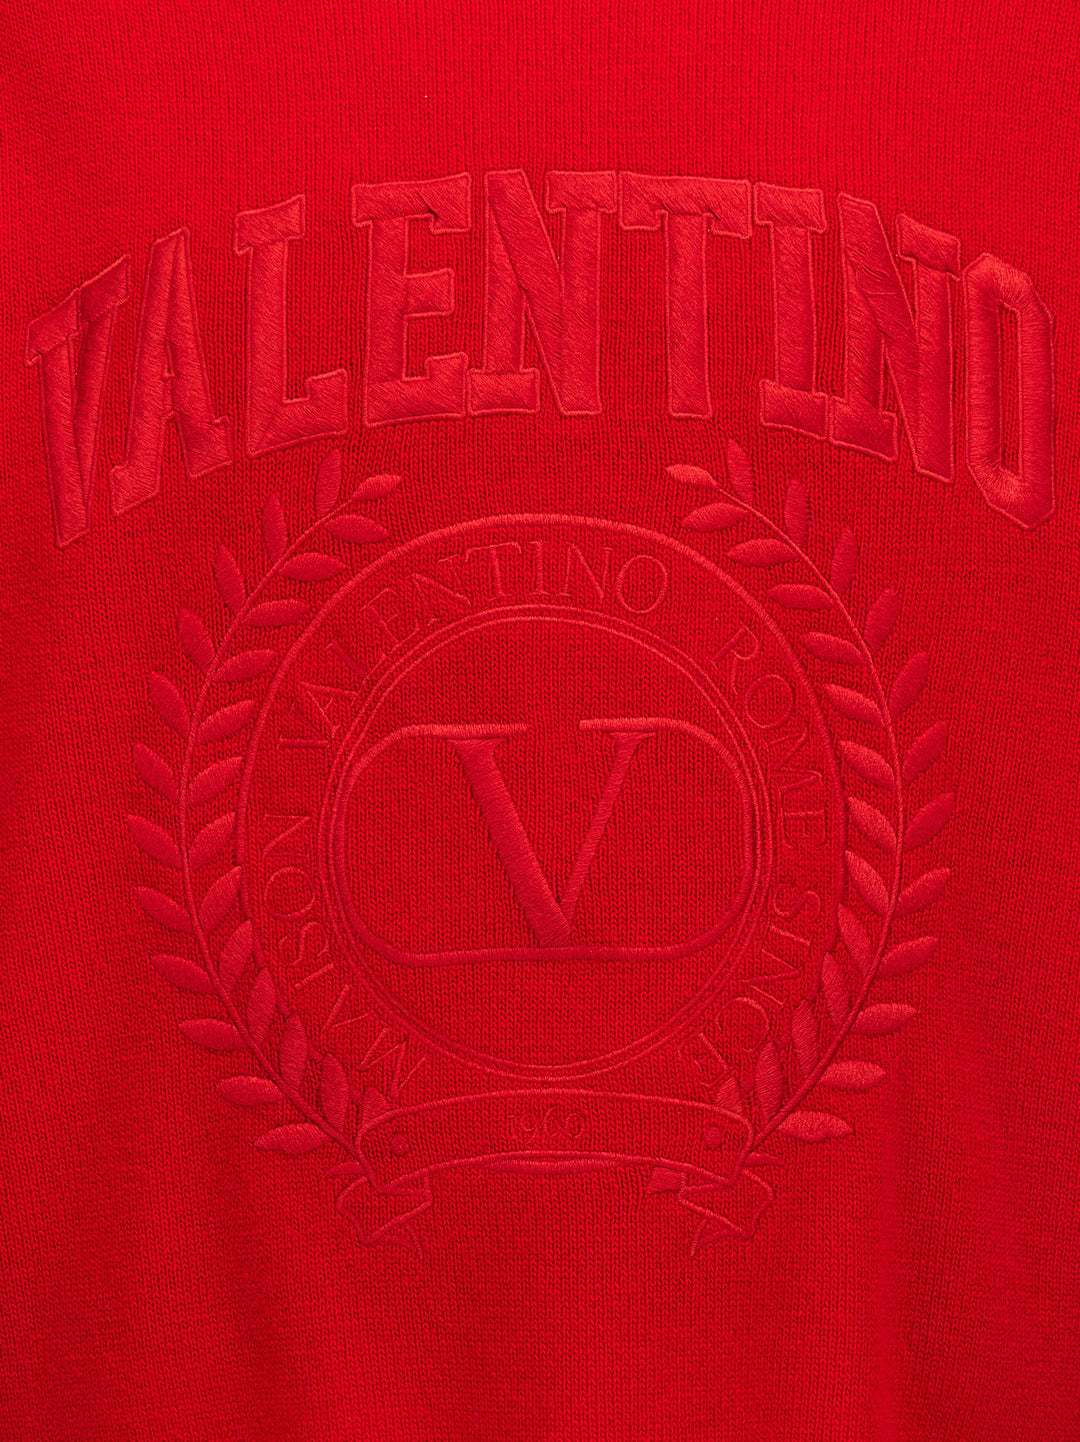 Valentino Logo Embroidery Sweater Maglioni Rosso